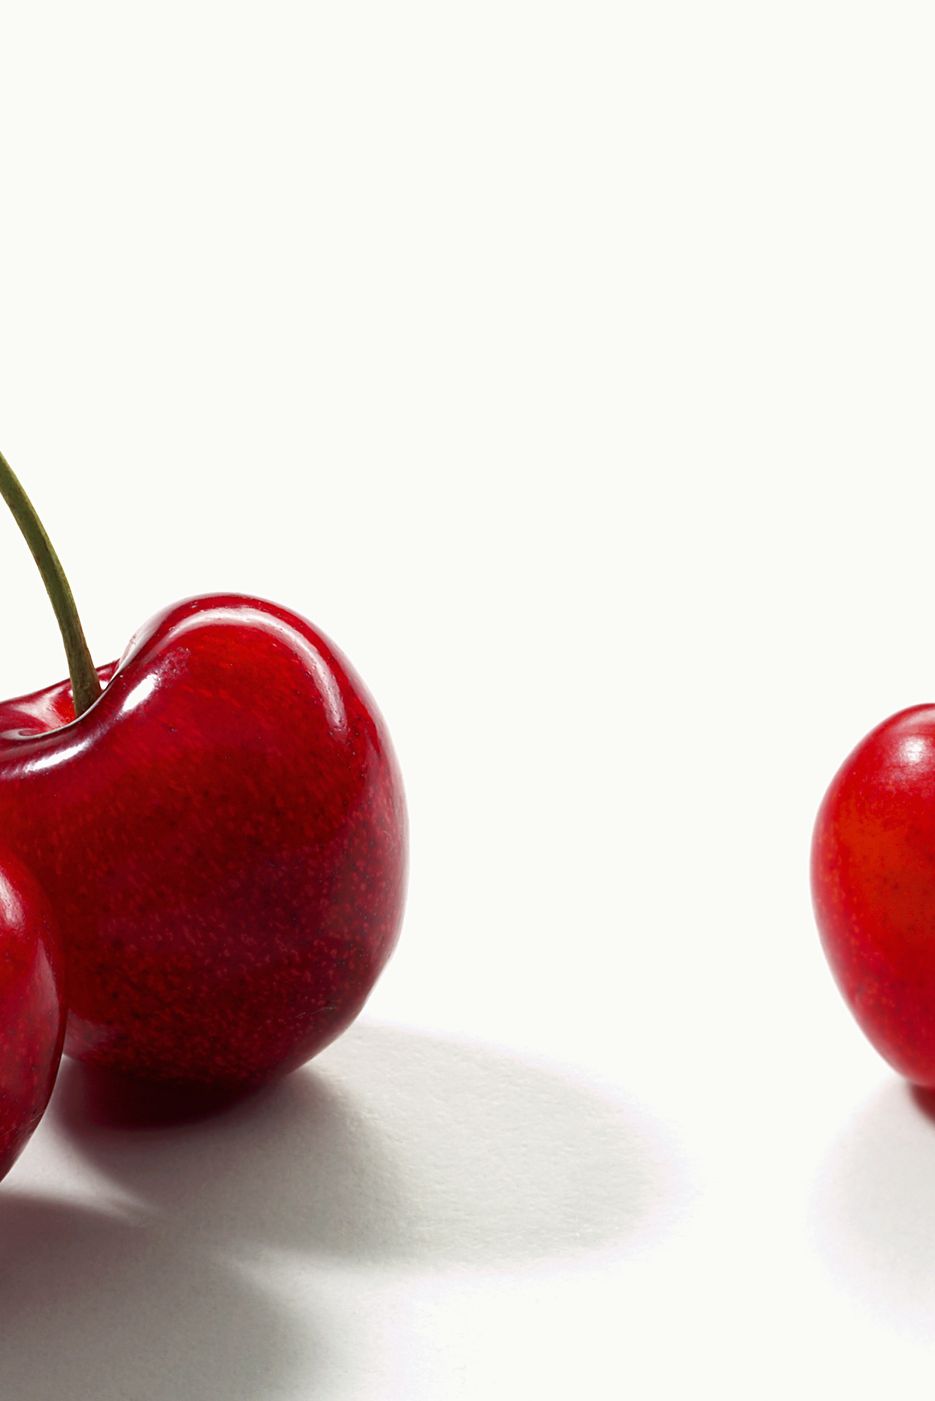 types of cherries morello